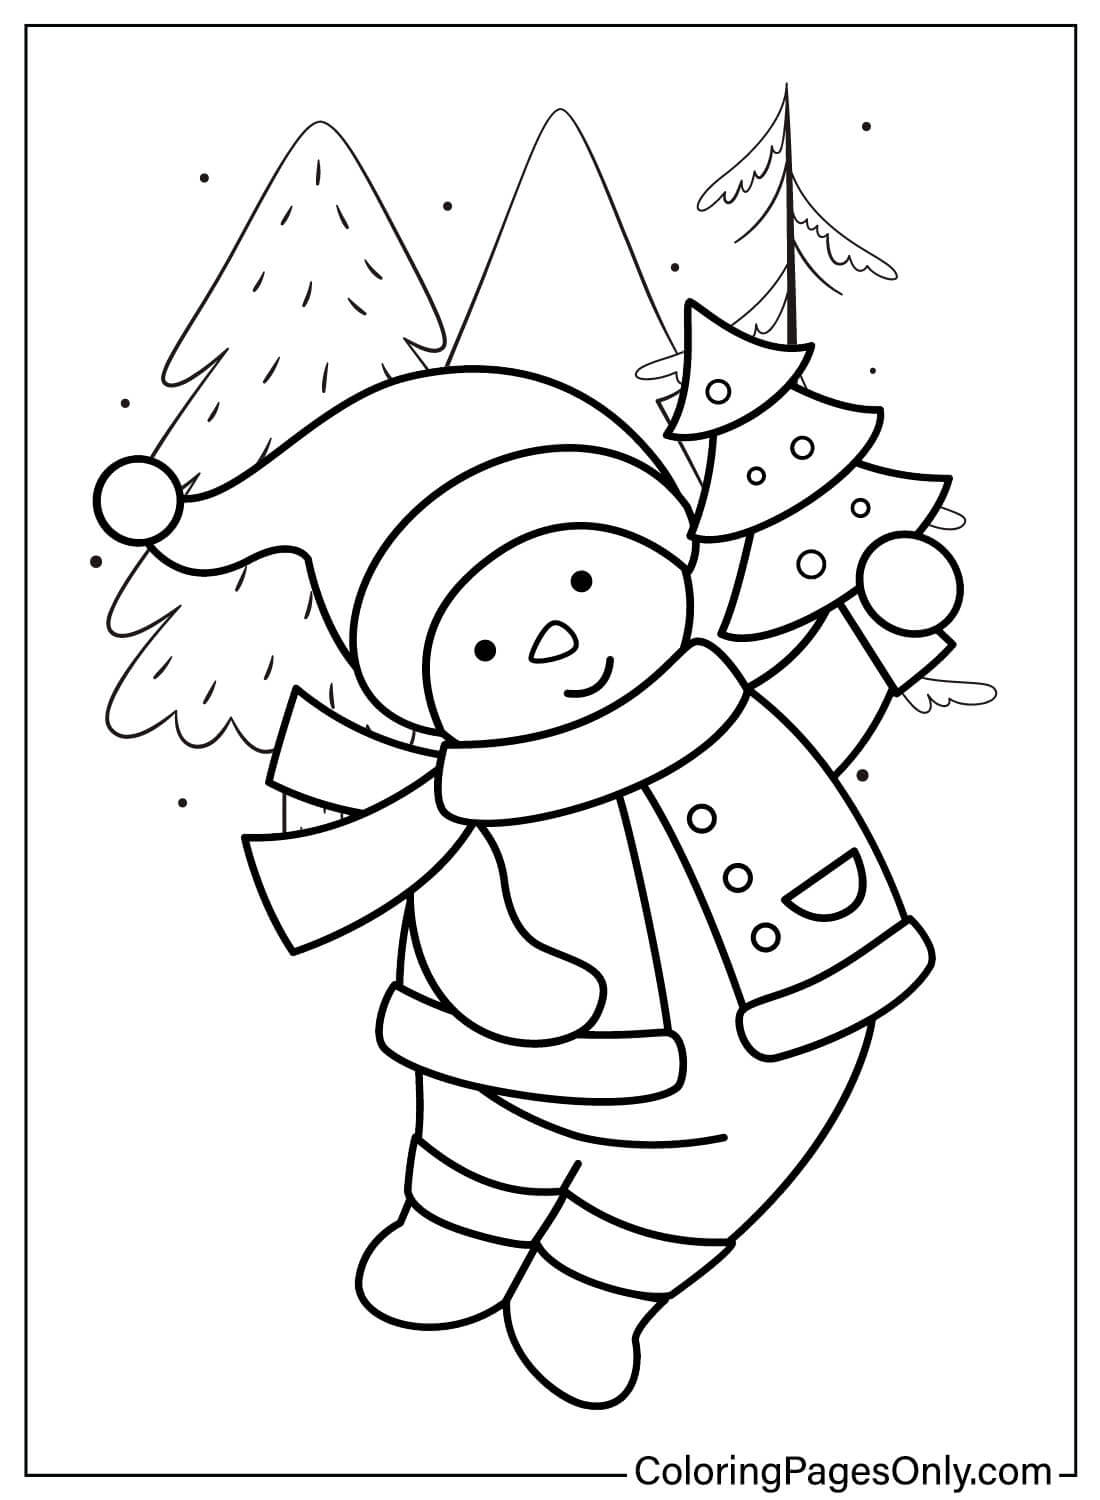 Página para colorear gratis de muñeco de nieve de muñeco de nieve